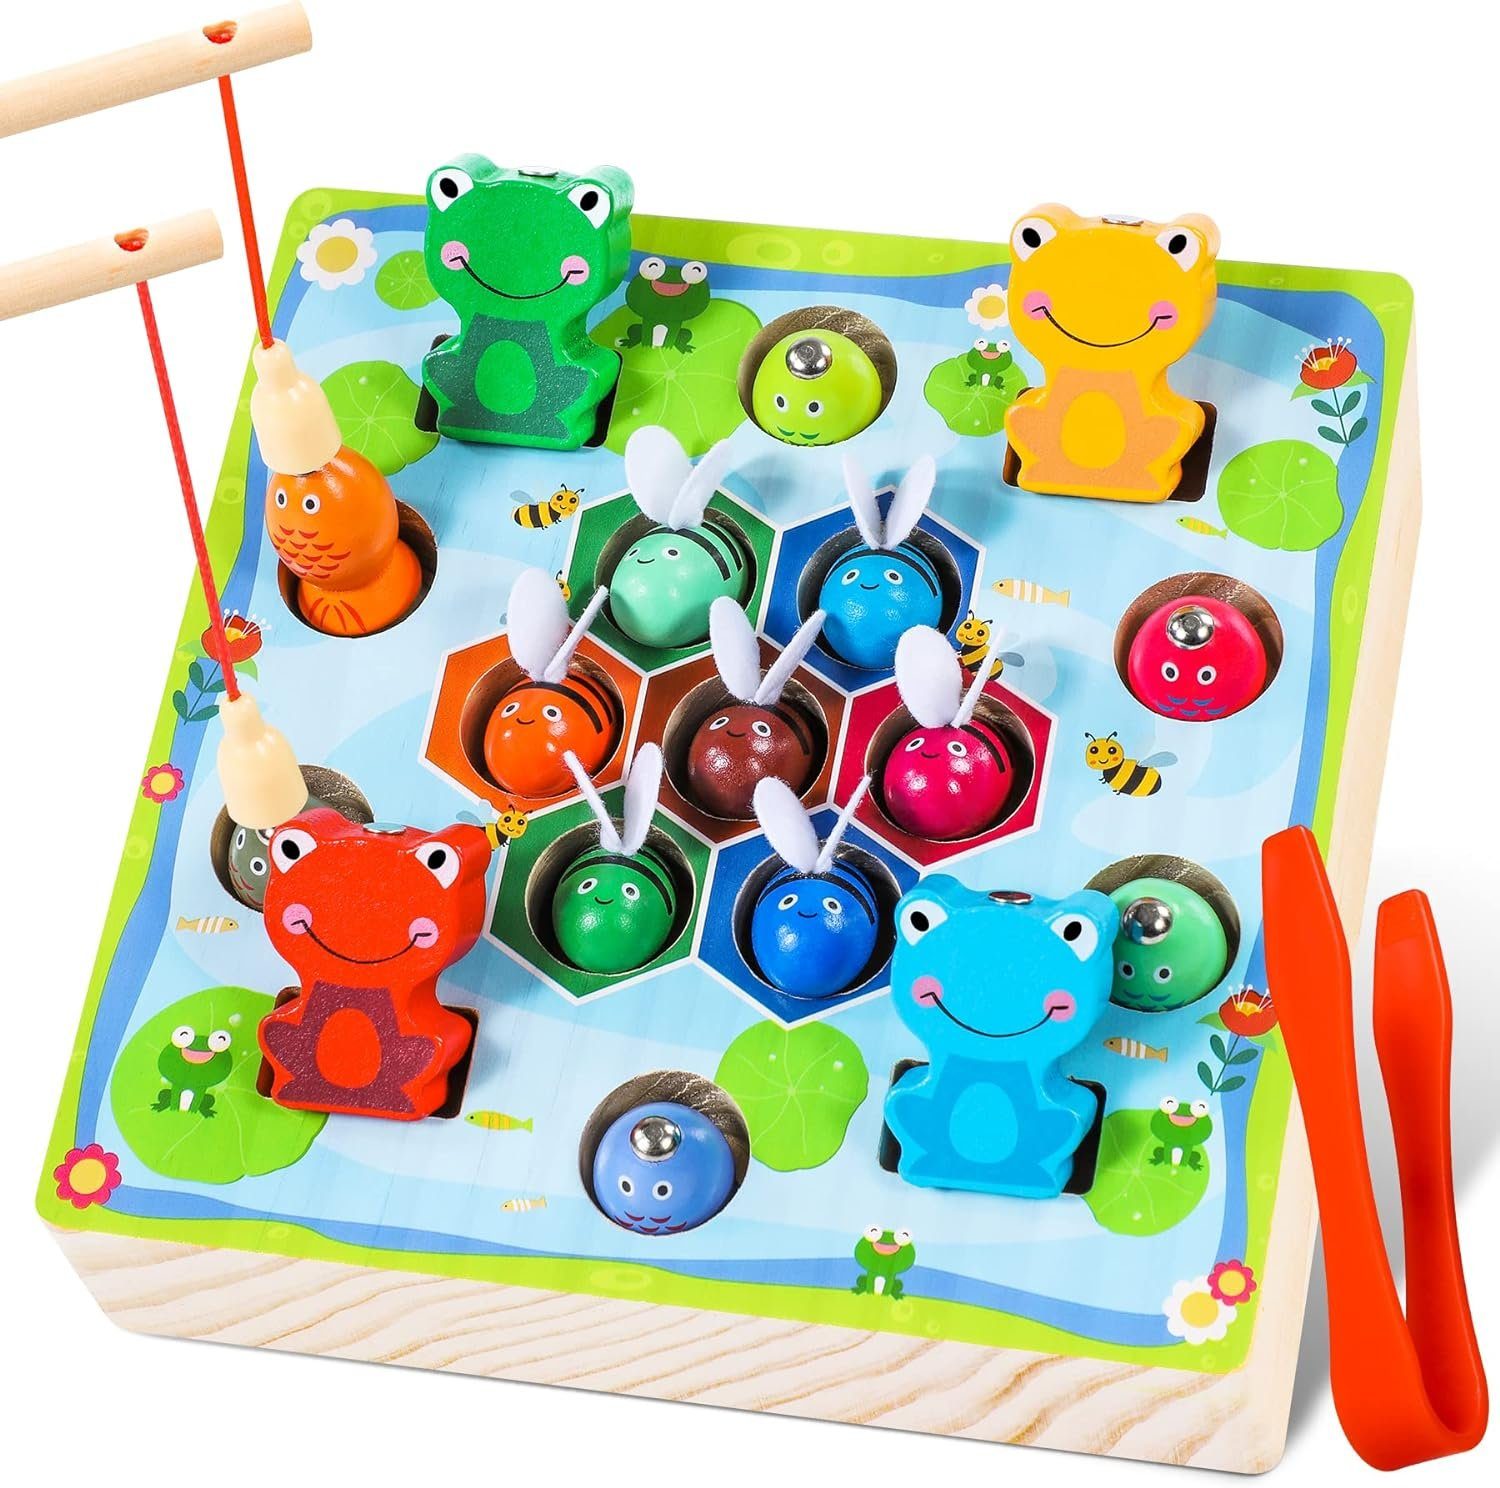 LENBEST Lernspielzeug Montessori Holzspielzeug, Kinderspielzeug  (Motorikspielzeug Lernspielzeug Geschenk für Kinder 2 3 4 Jahre), Spielzeug  ab 2 Jahre, ab 3 Jahre Magnetisches Angelspiel